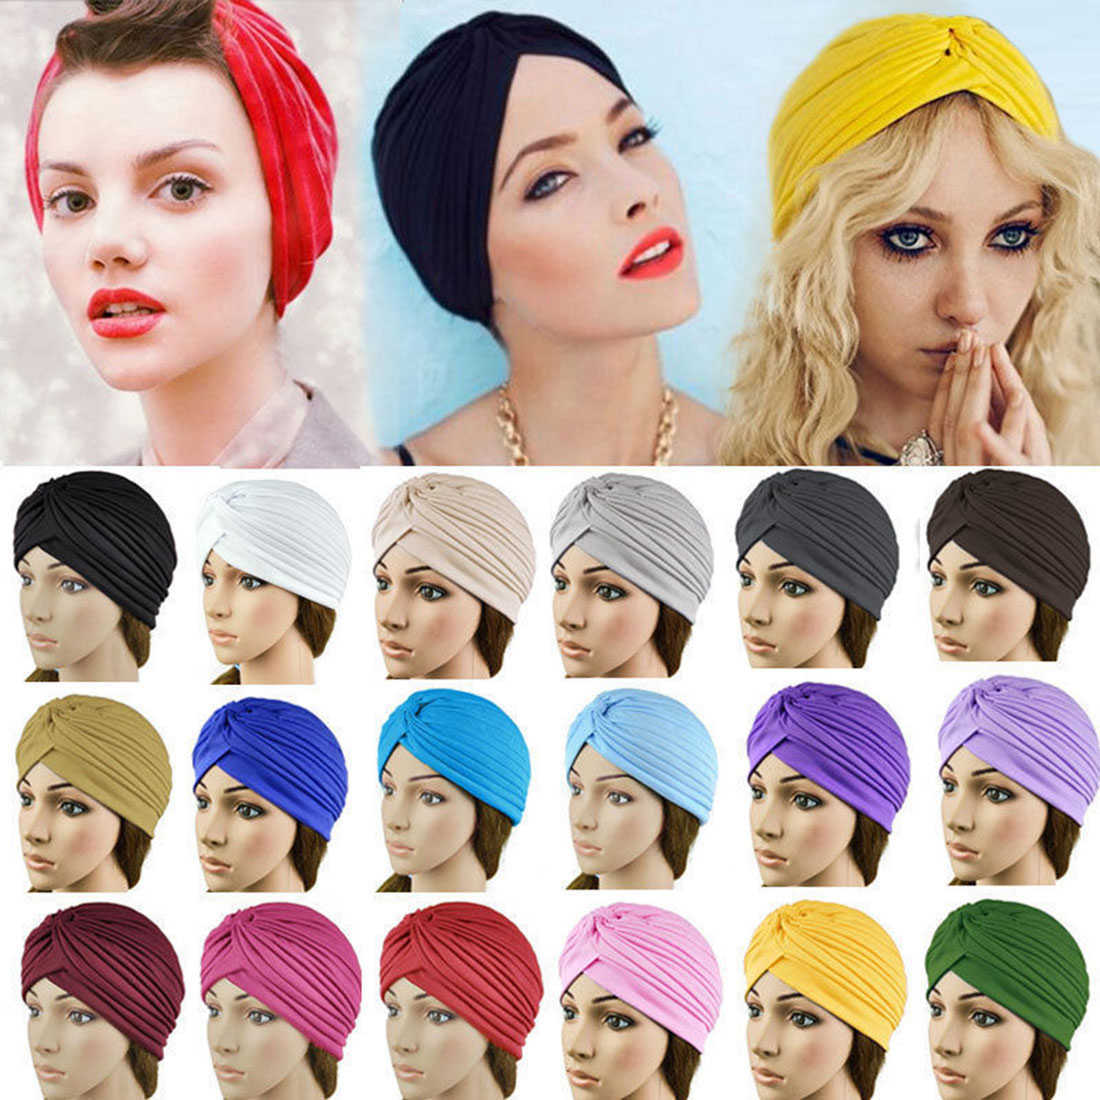 Diademas 2019 Bandanas calientes Mujeres Turbante elástico Sombrero musulmán Diadema Warp Mujer Chemo Hijab Anudado Indian Cap Adulto Head Wrap para mujeres T221007